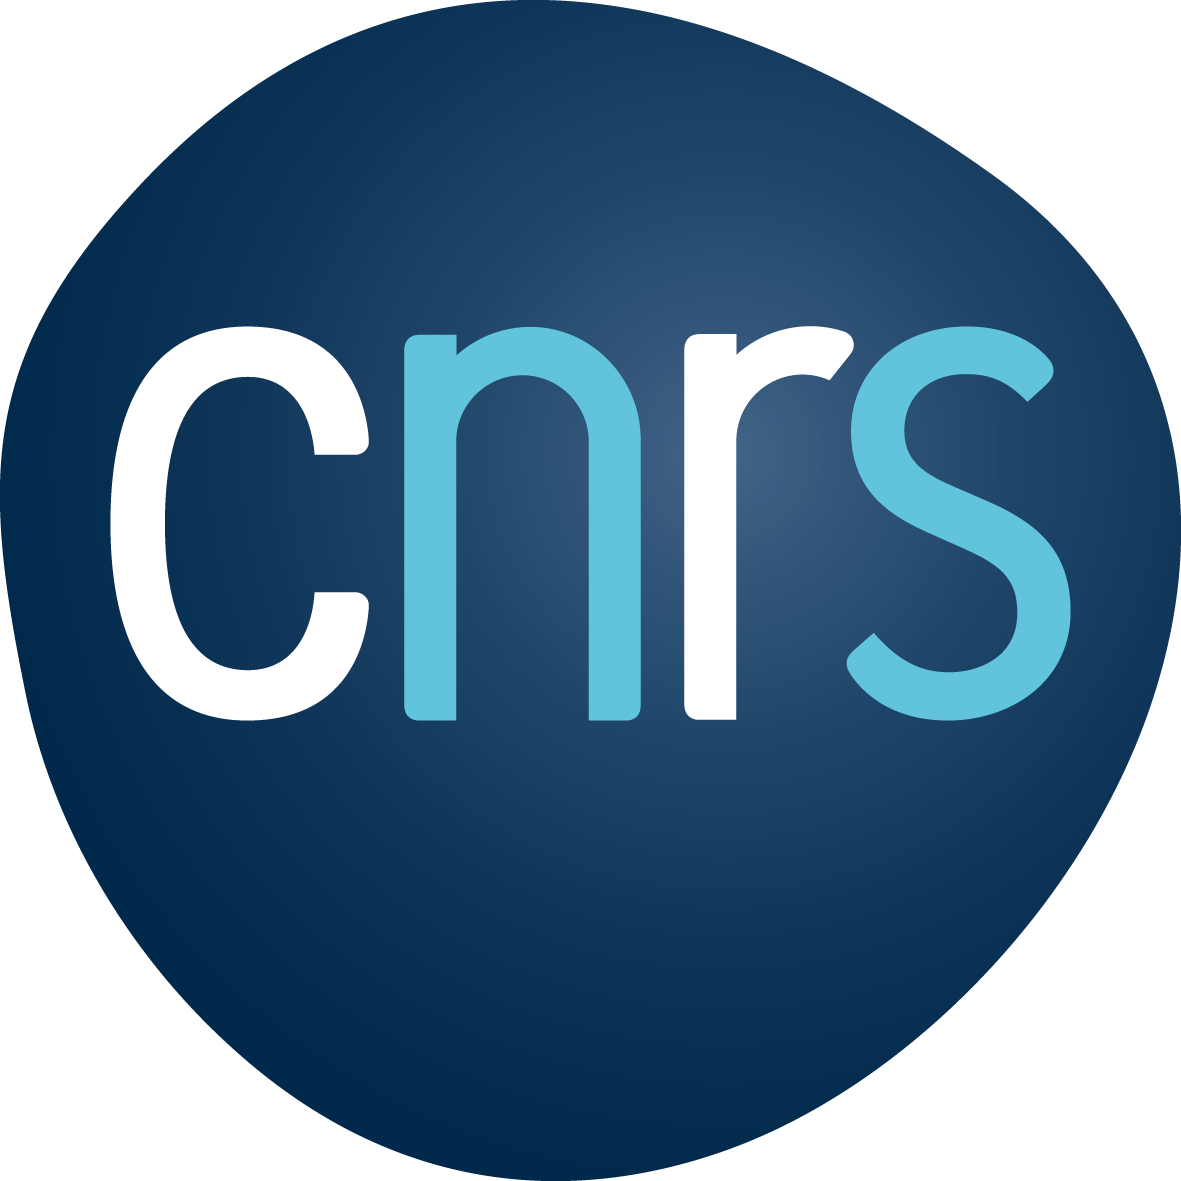 Centre Nationale de Recherche Scientifique - CNRS